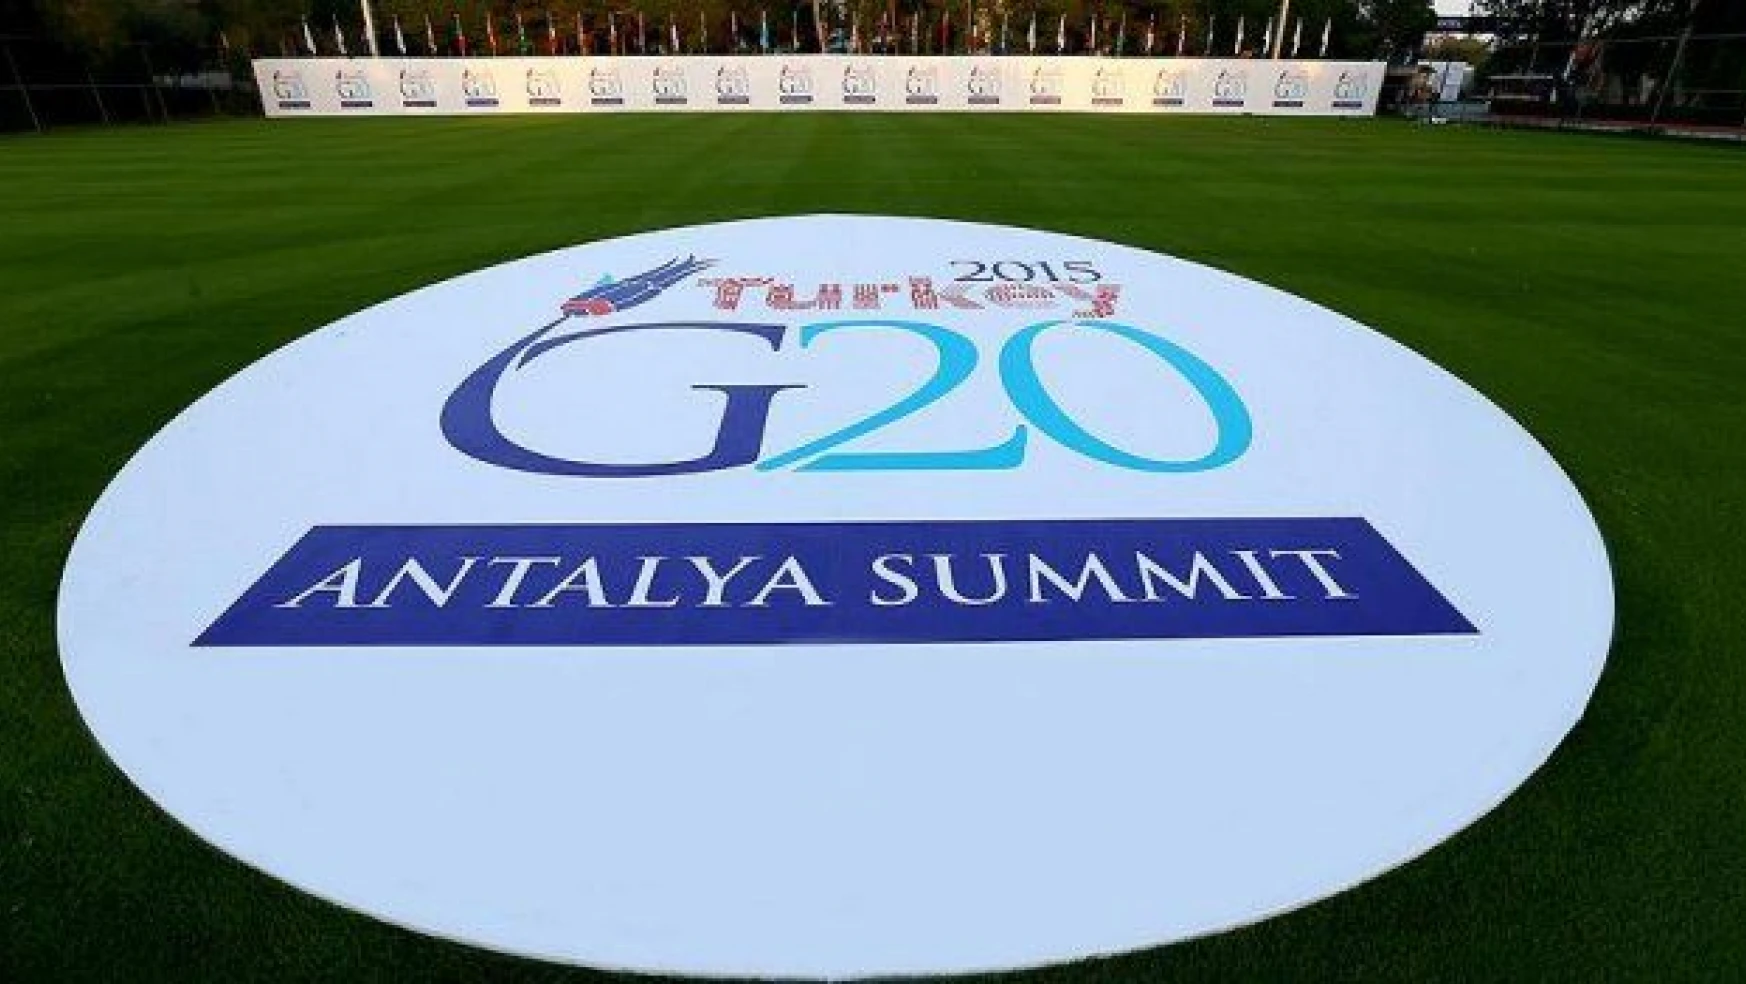 Liderler geldi, G-20 Zirvesi başlıyor